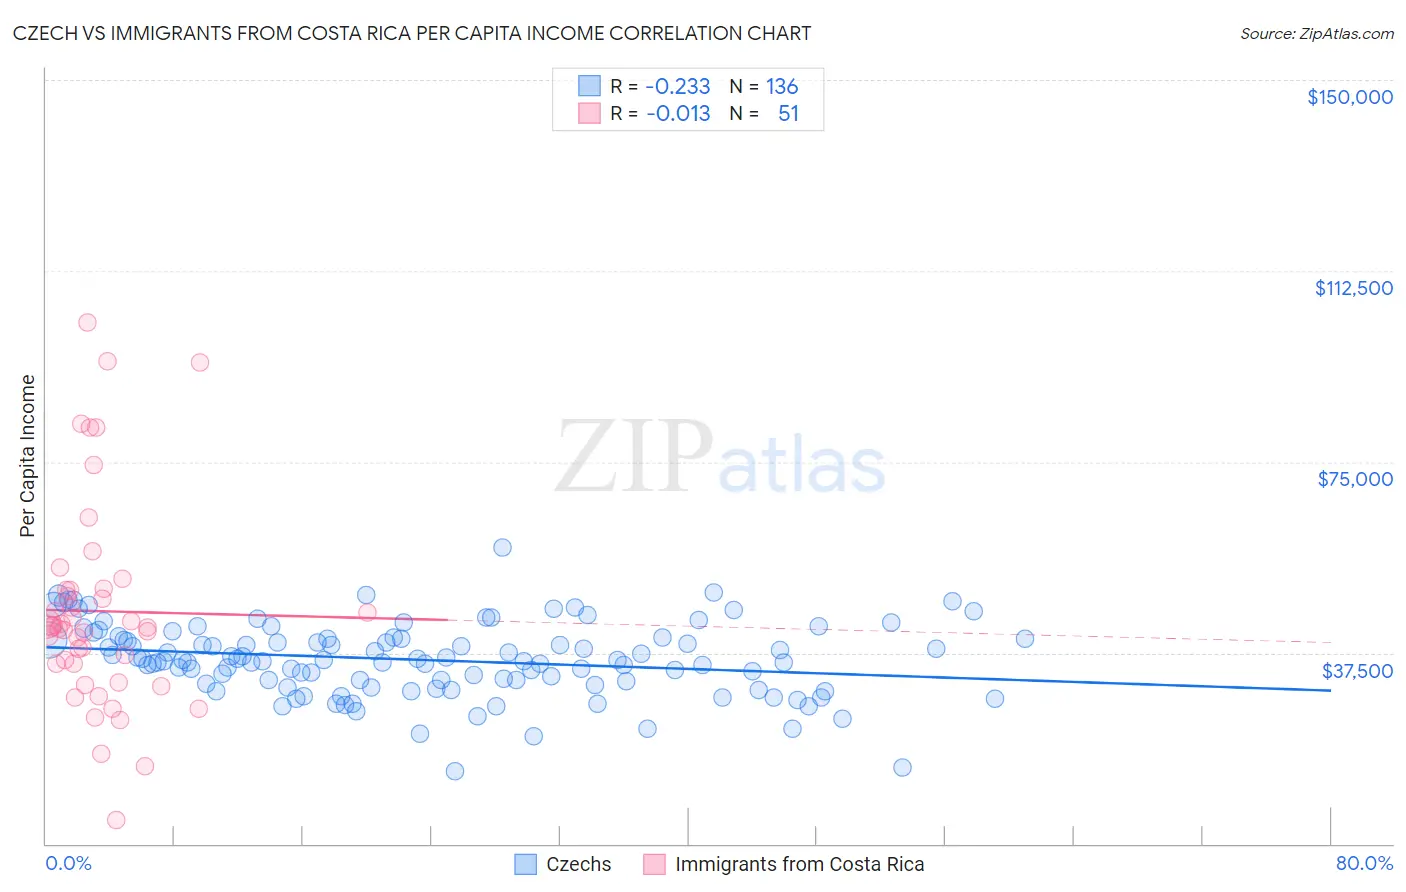 Czech vs Immigrants from Costa Rica Per Capita Income